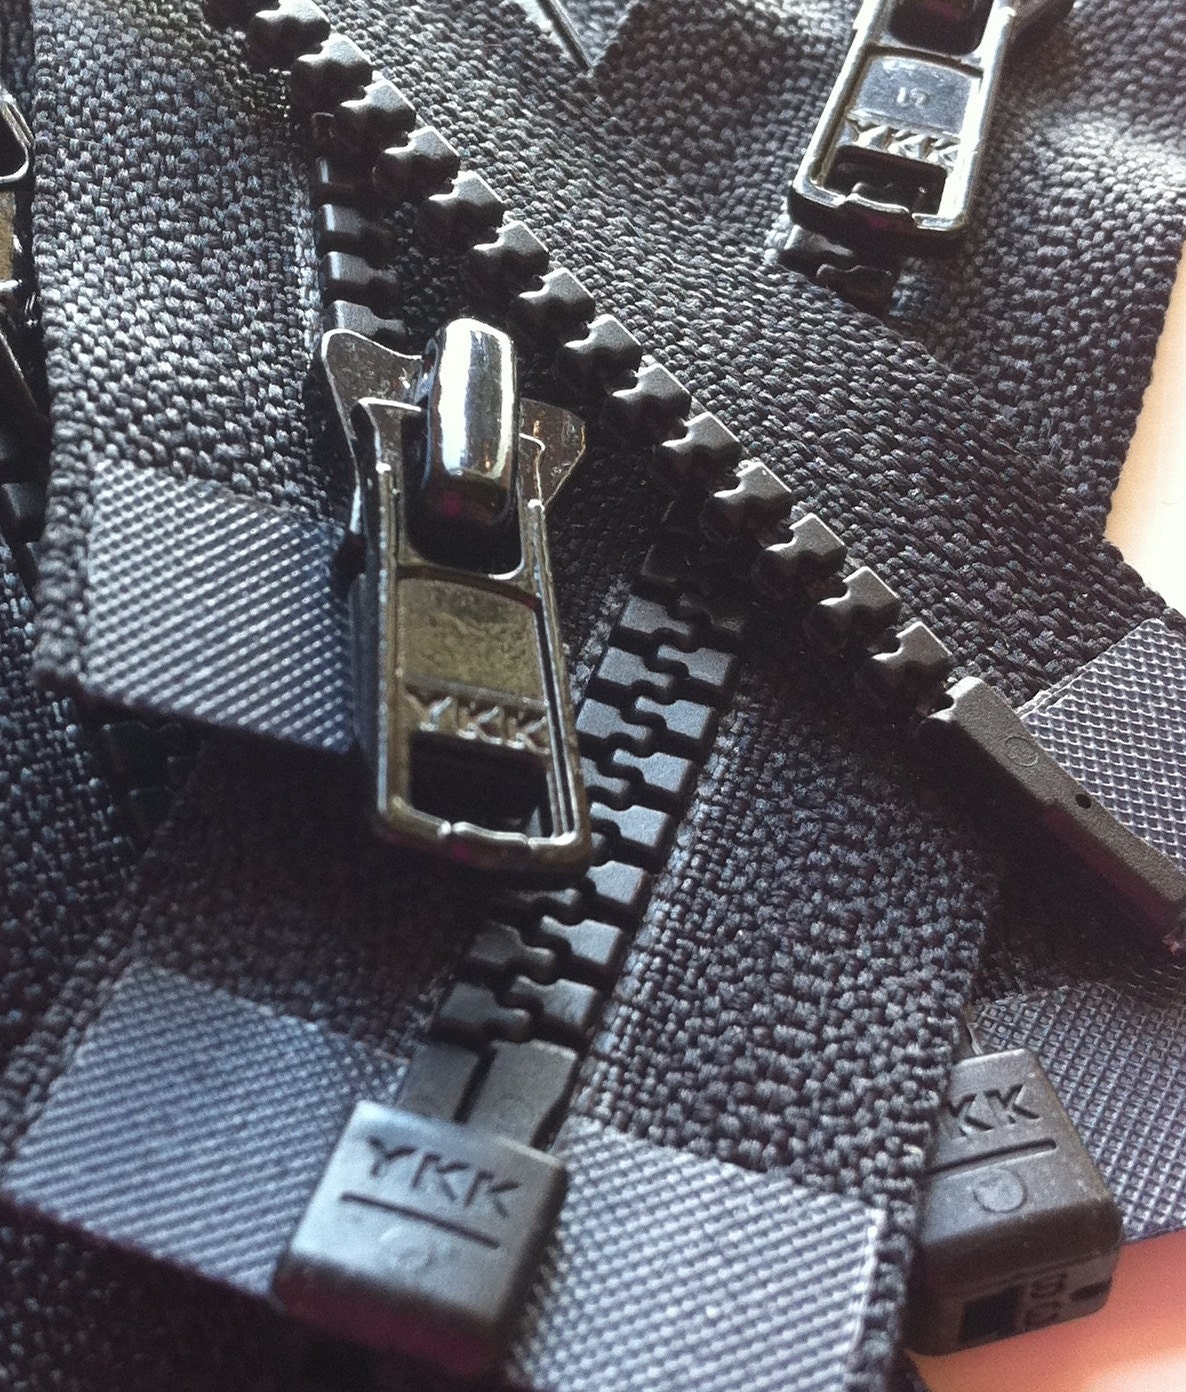 Lenzip® #5 Black Separating Coil Zipper (Metal Single Pull Slider)